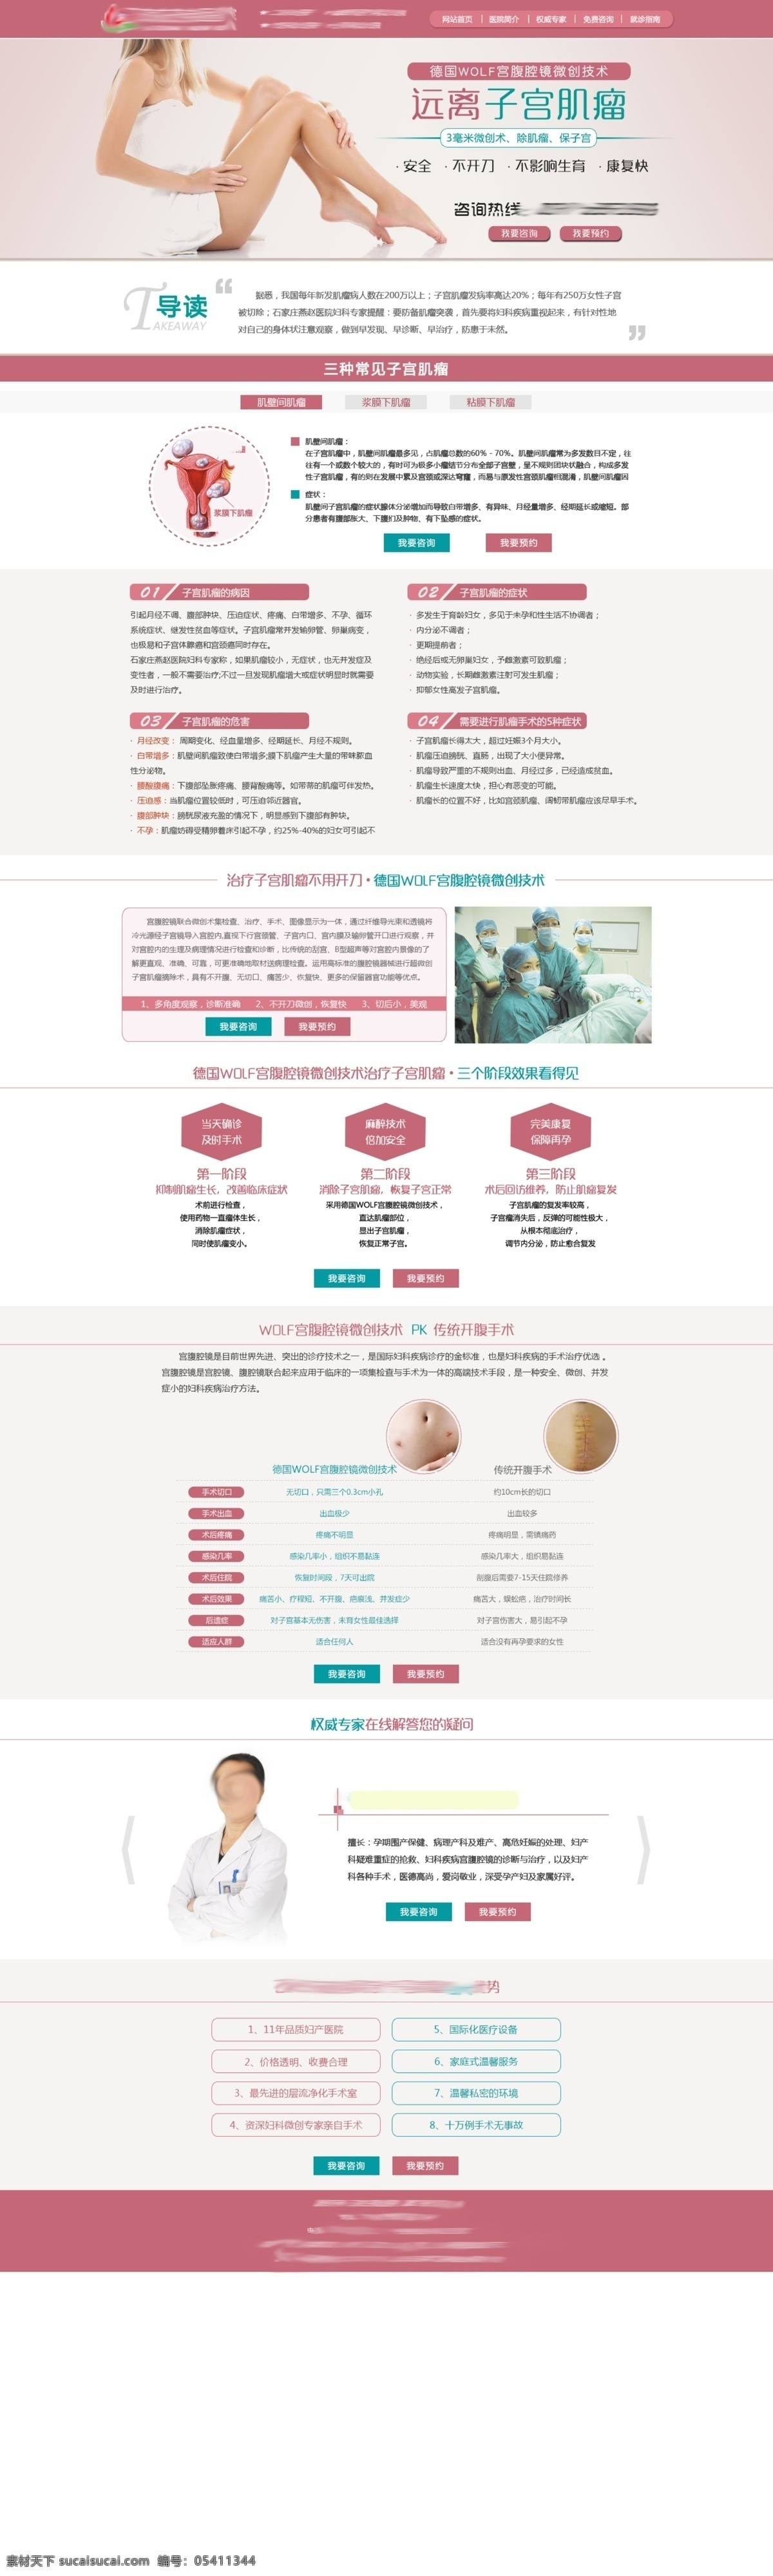 子宫肌瘤 妇科 网站 医院 网站设计 网页 妇科专题 专题 网页素材